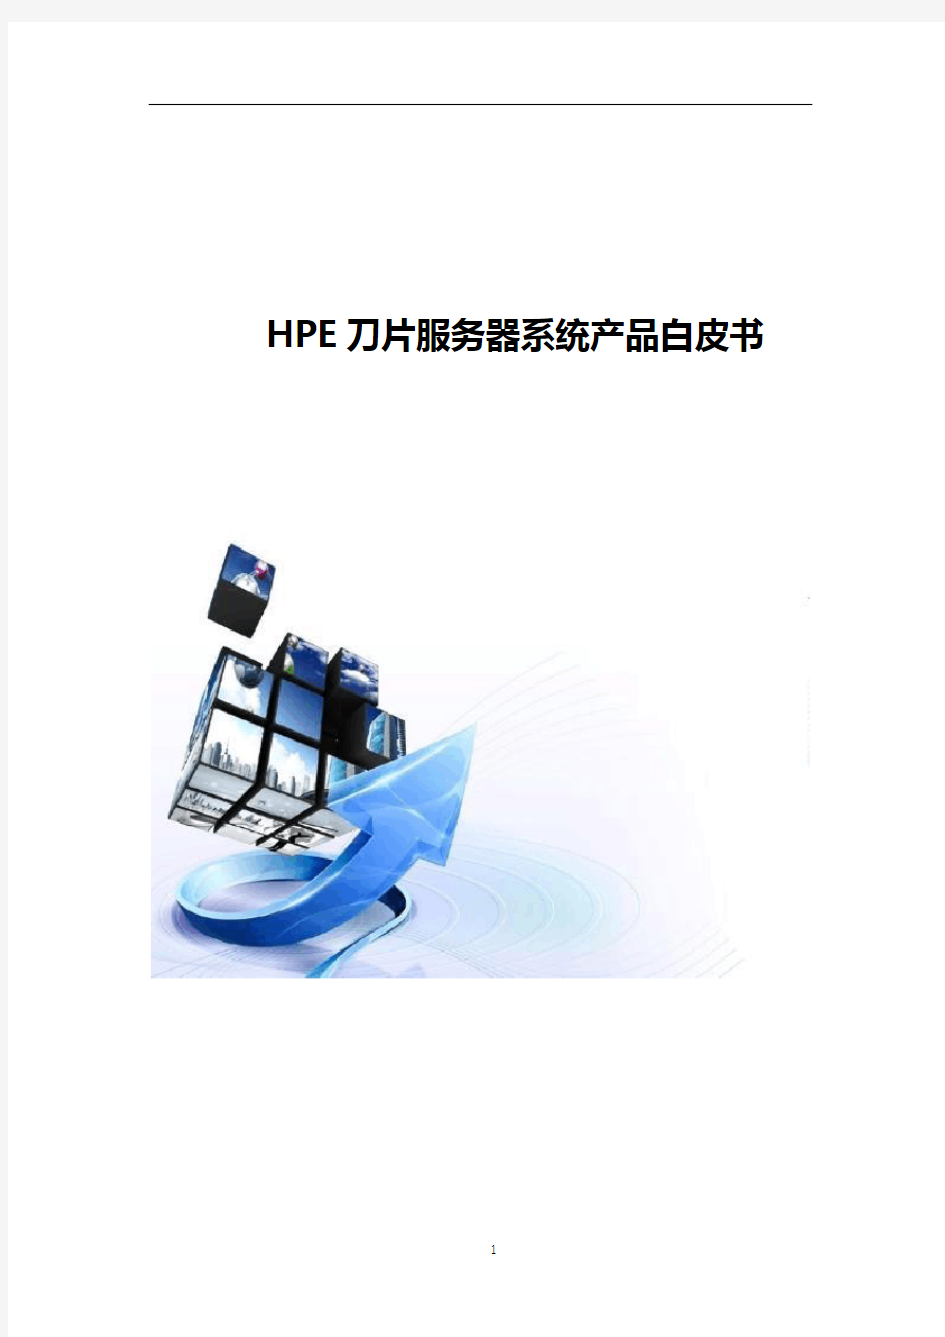 HPE刀片服务器系统产品白皮书